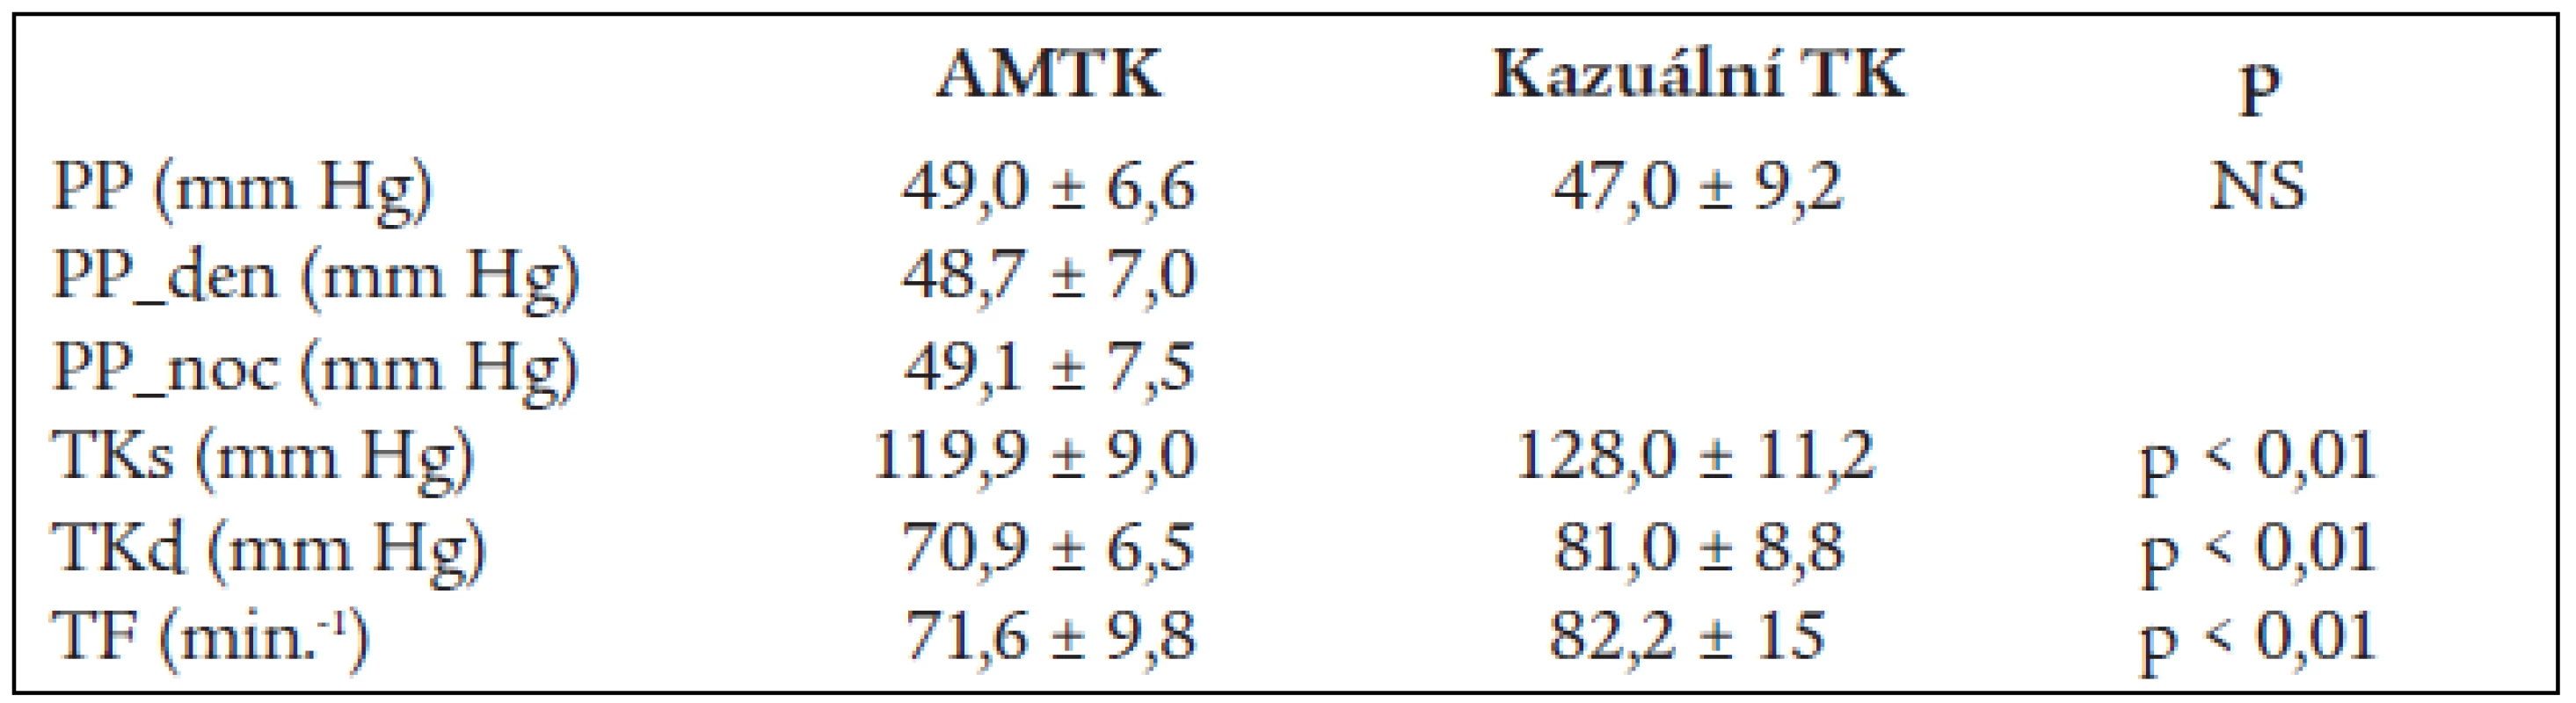 Hodnoty AMTK a kazuálního krevního tlaku u 252 mladých mužů a žen.